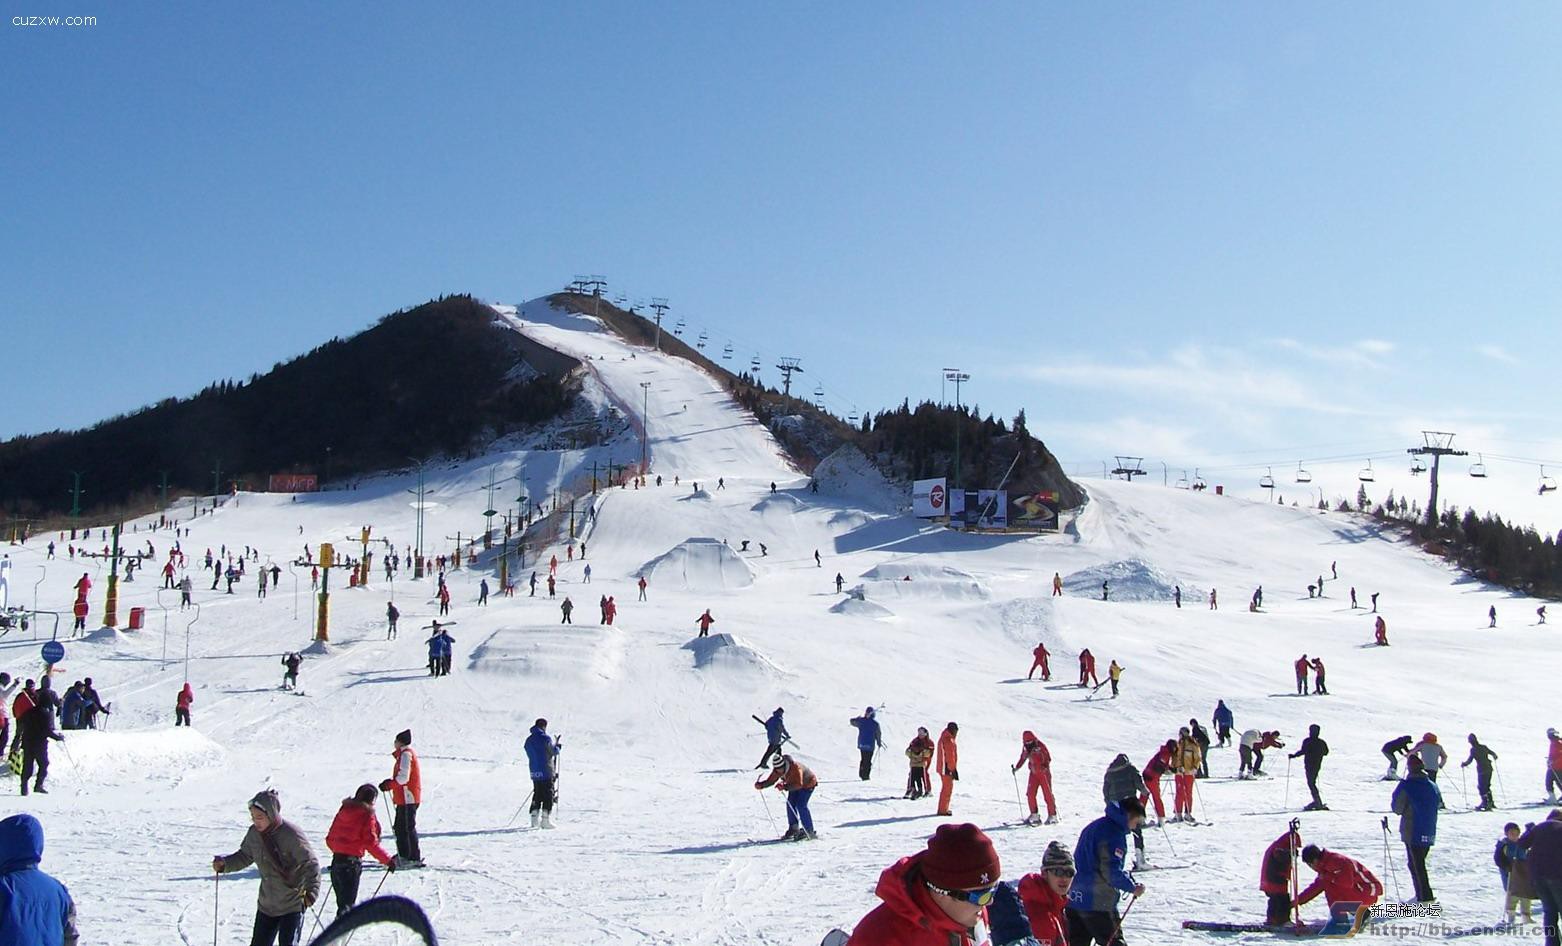 龙门崮滑雪场图片